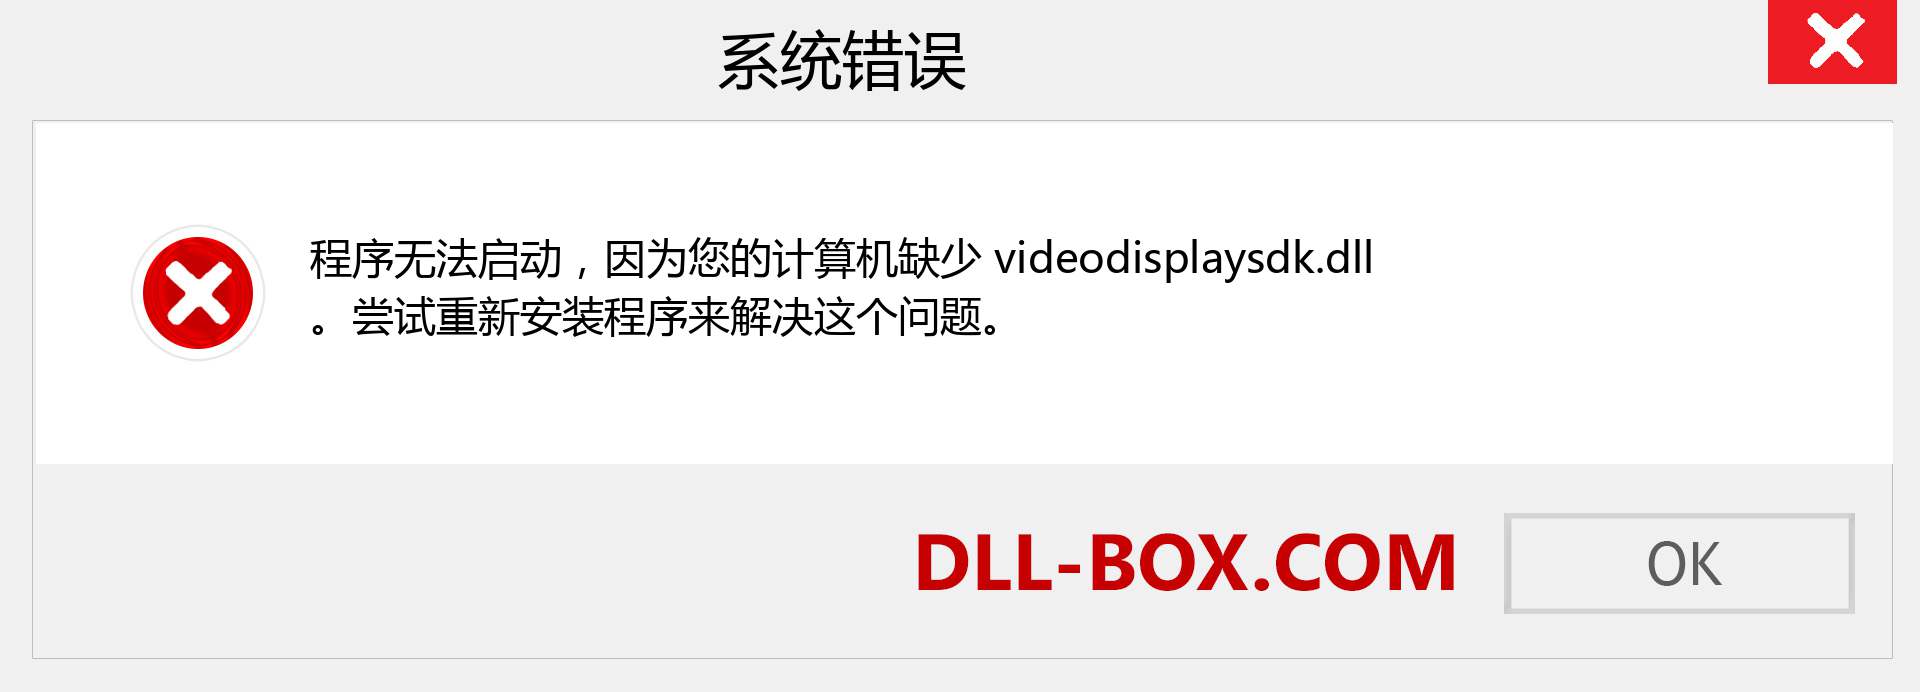 videodisplaysdk.dll 文件丢失？。 适用于 Windows 7、8、10 的下载 - 修复 Windows、照片、图像上的 videodisplaysdk dll 丢失错误